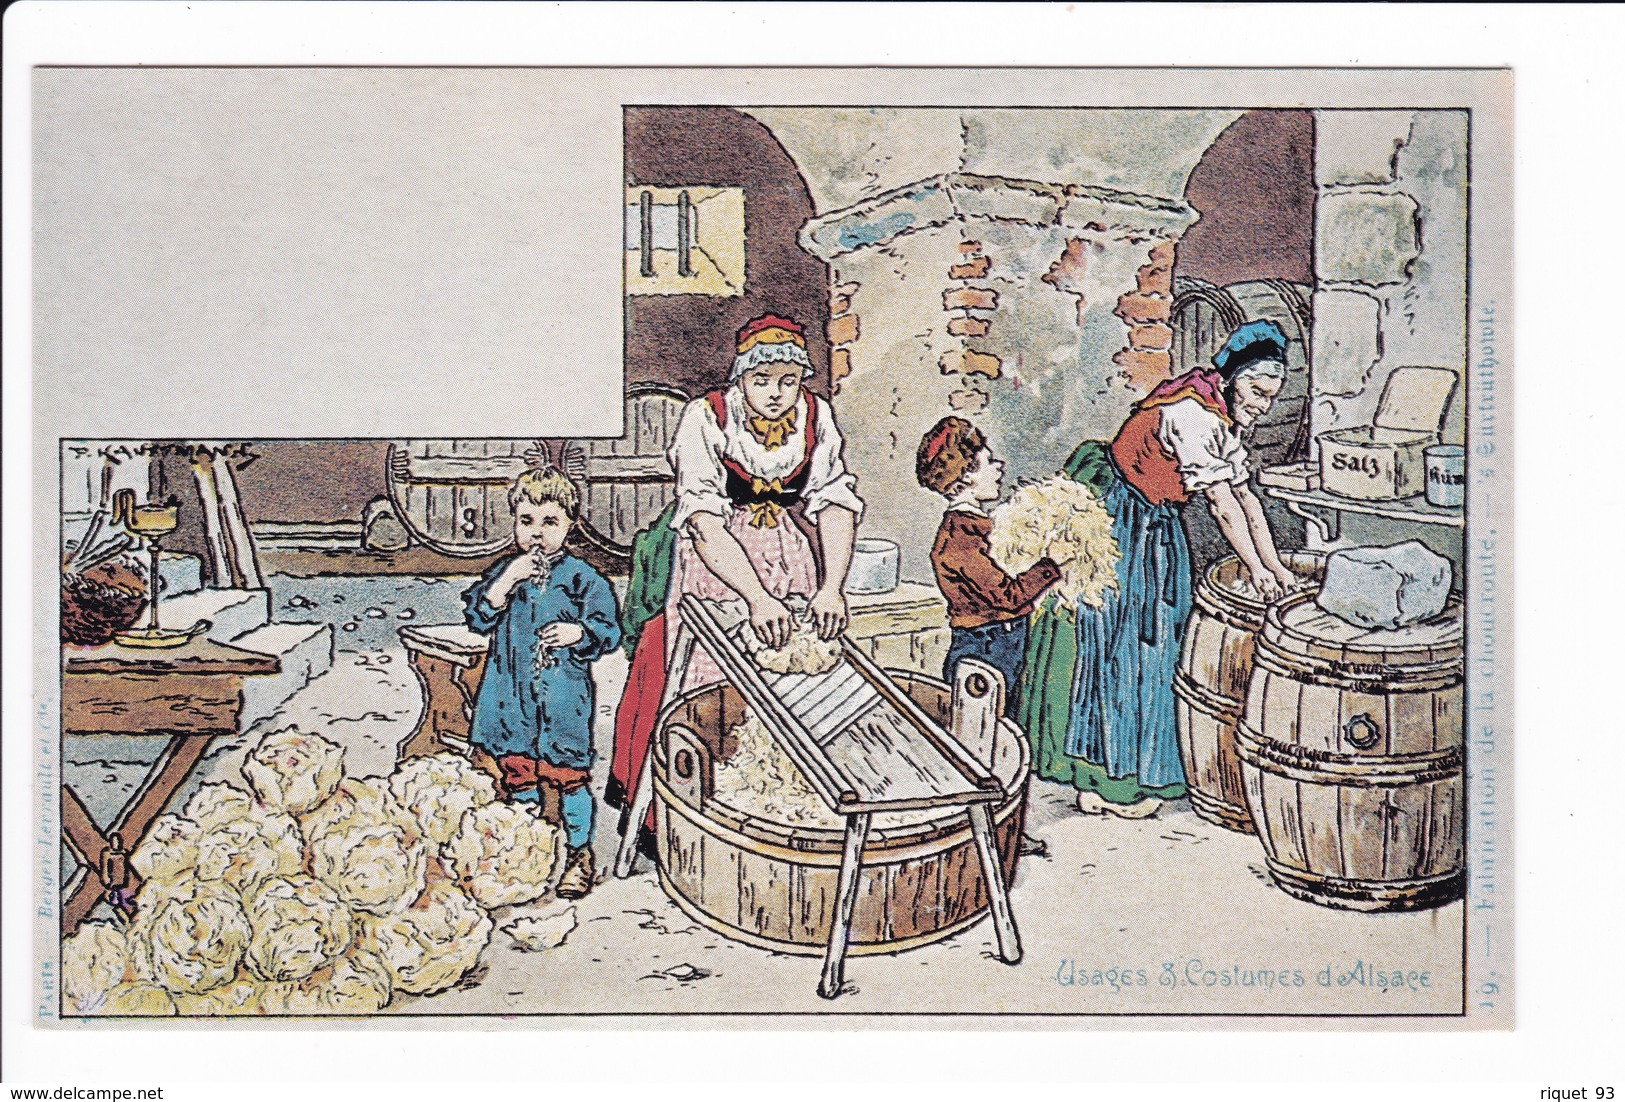 Lot 19 cp "Usages et Costume d'Alsace" dessins P. Kauffmann -(reproduction PIERRON)